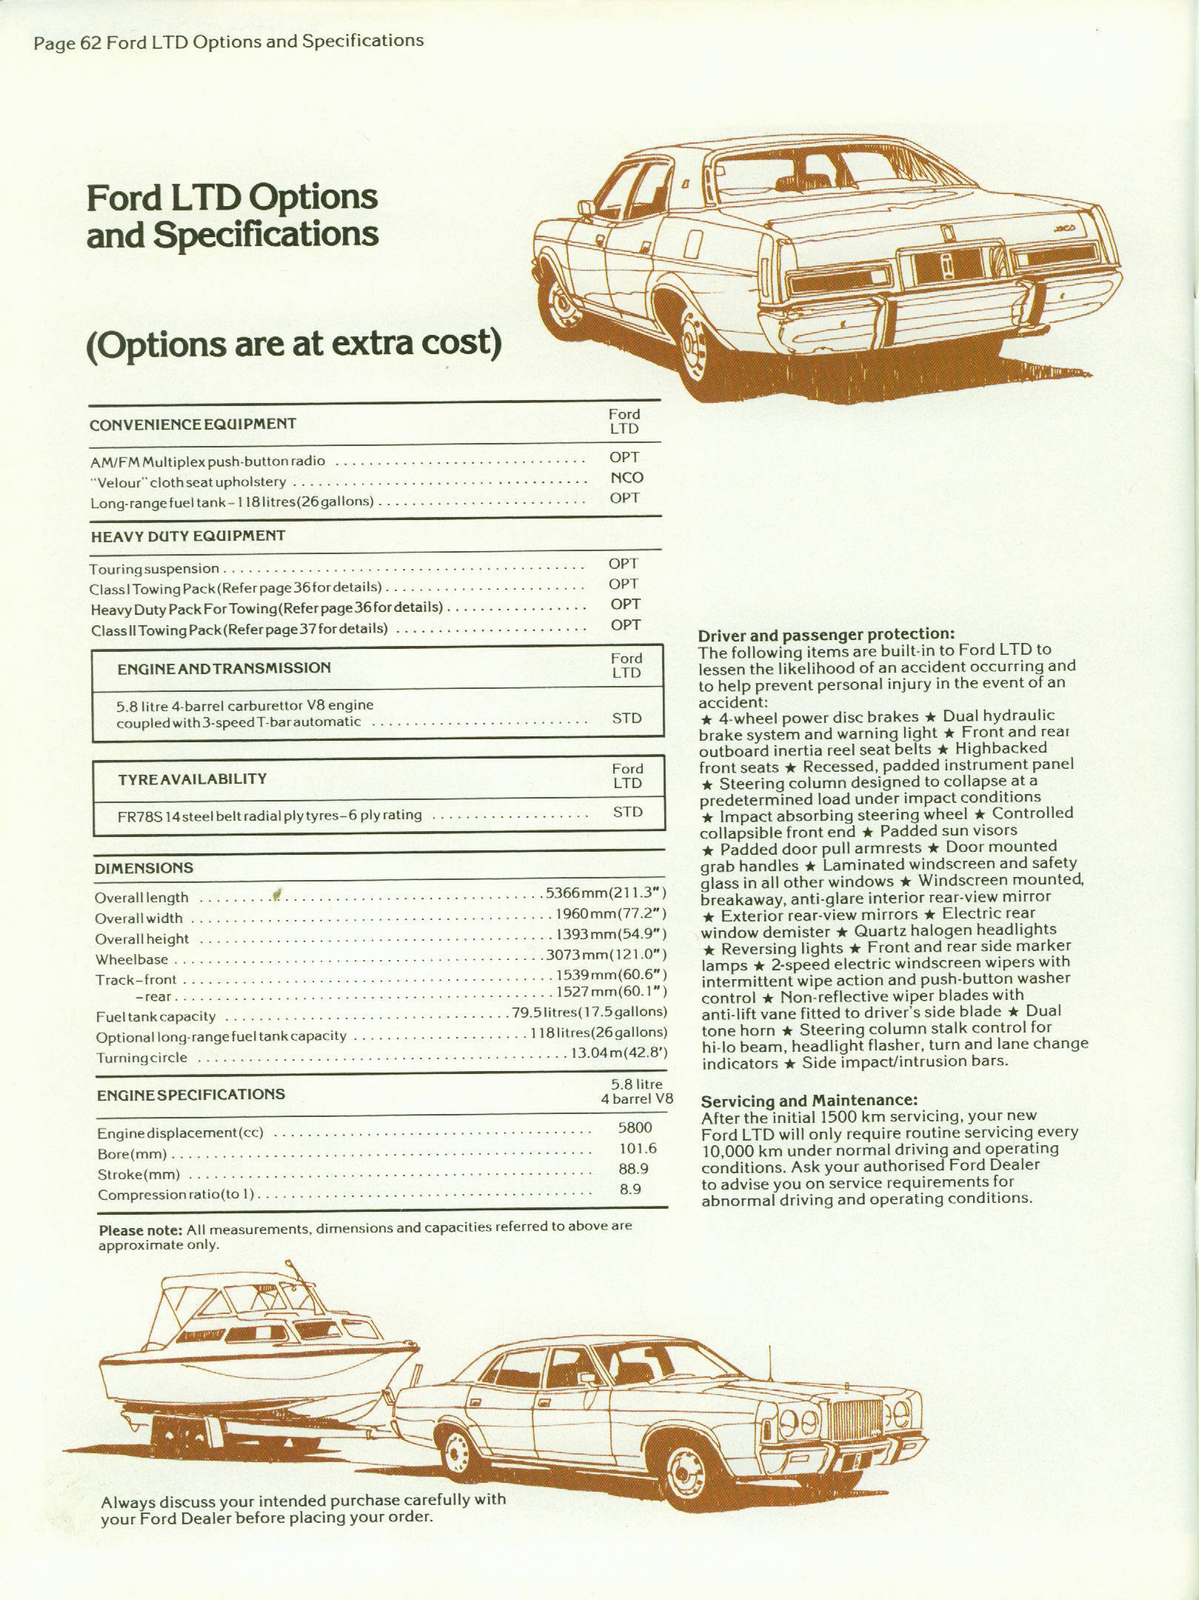 n_1978 Ford Australia-62.jpg